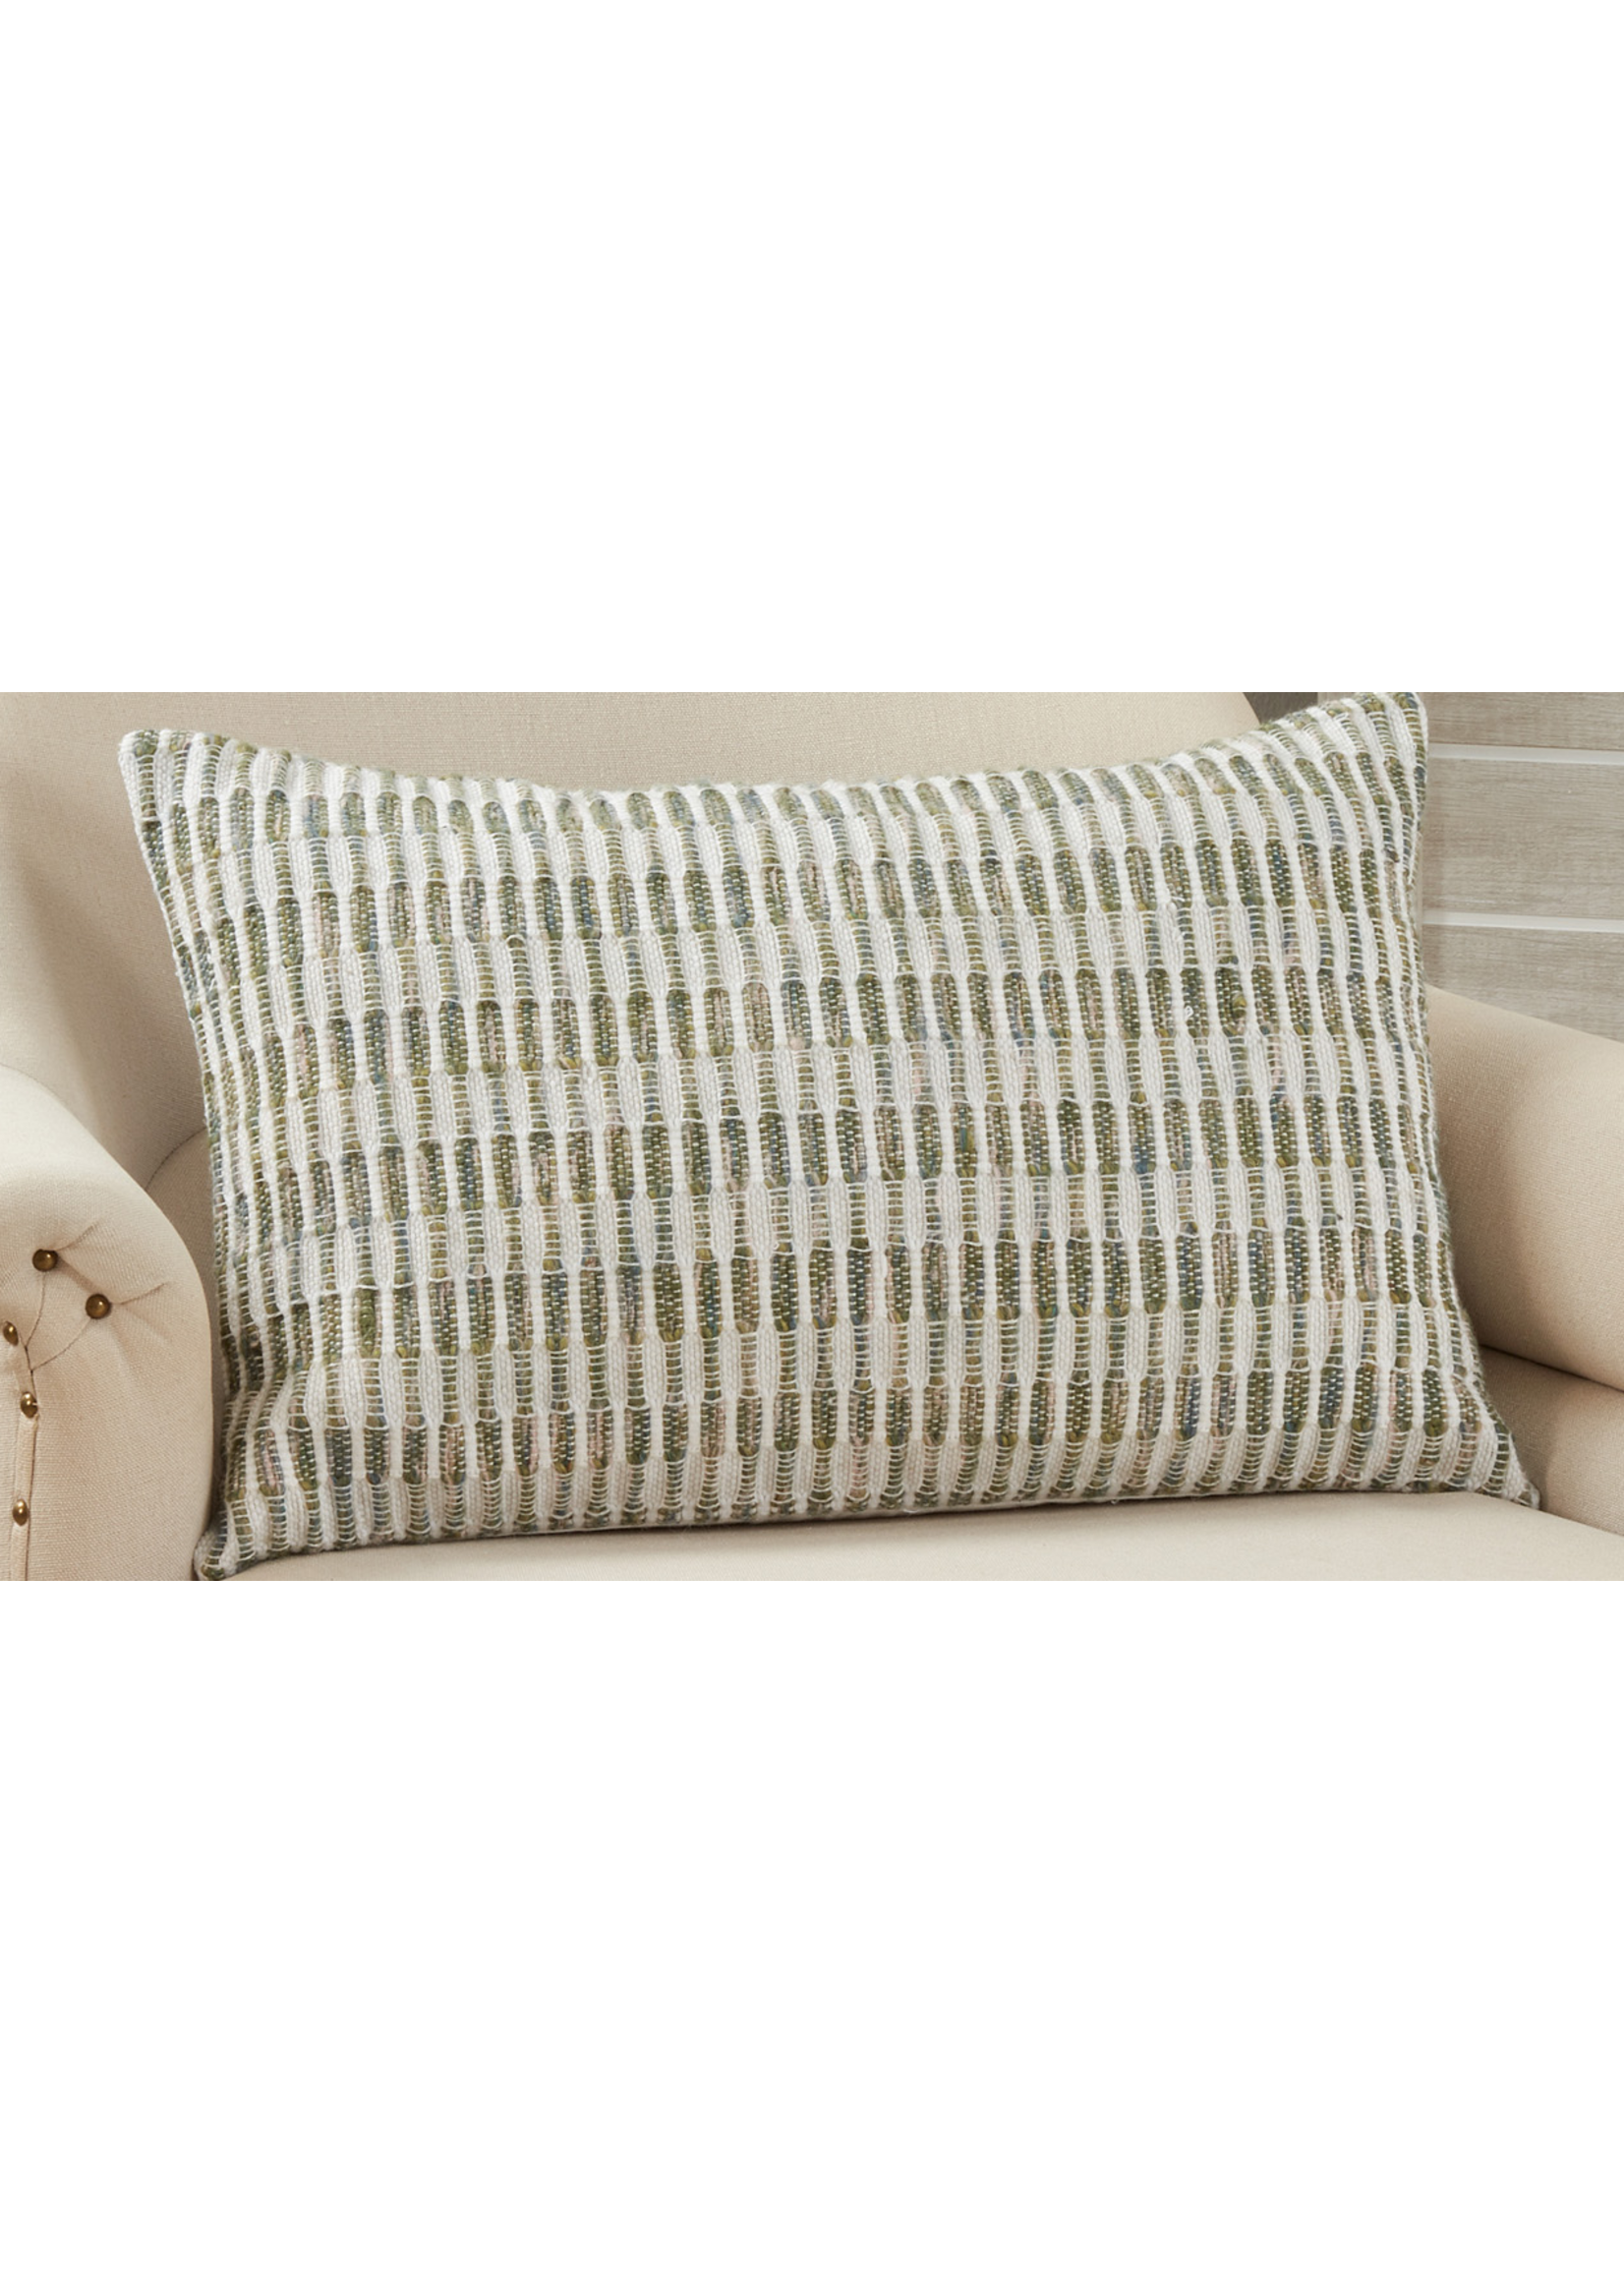 Saro Saro Woven Green Line Pillow Down Filled 16x24